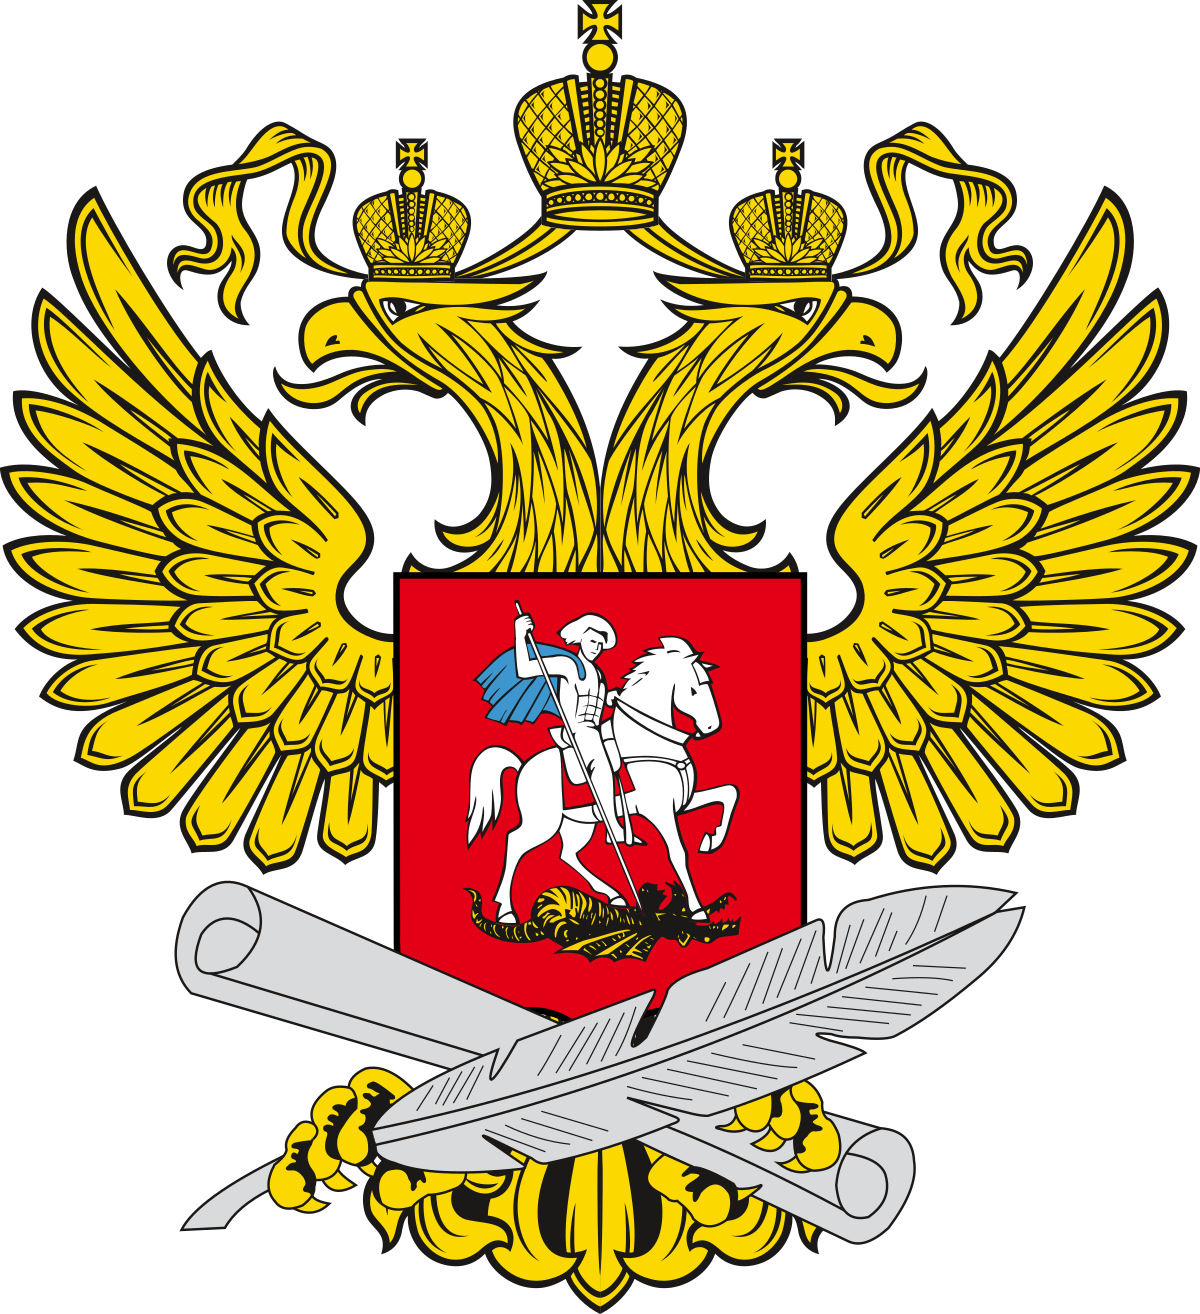 Министерство образования Московской области